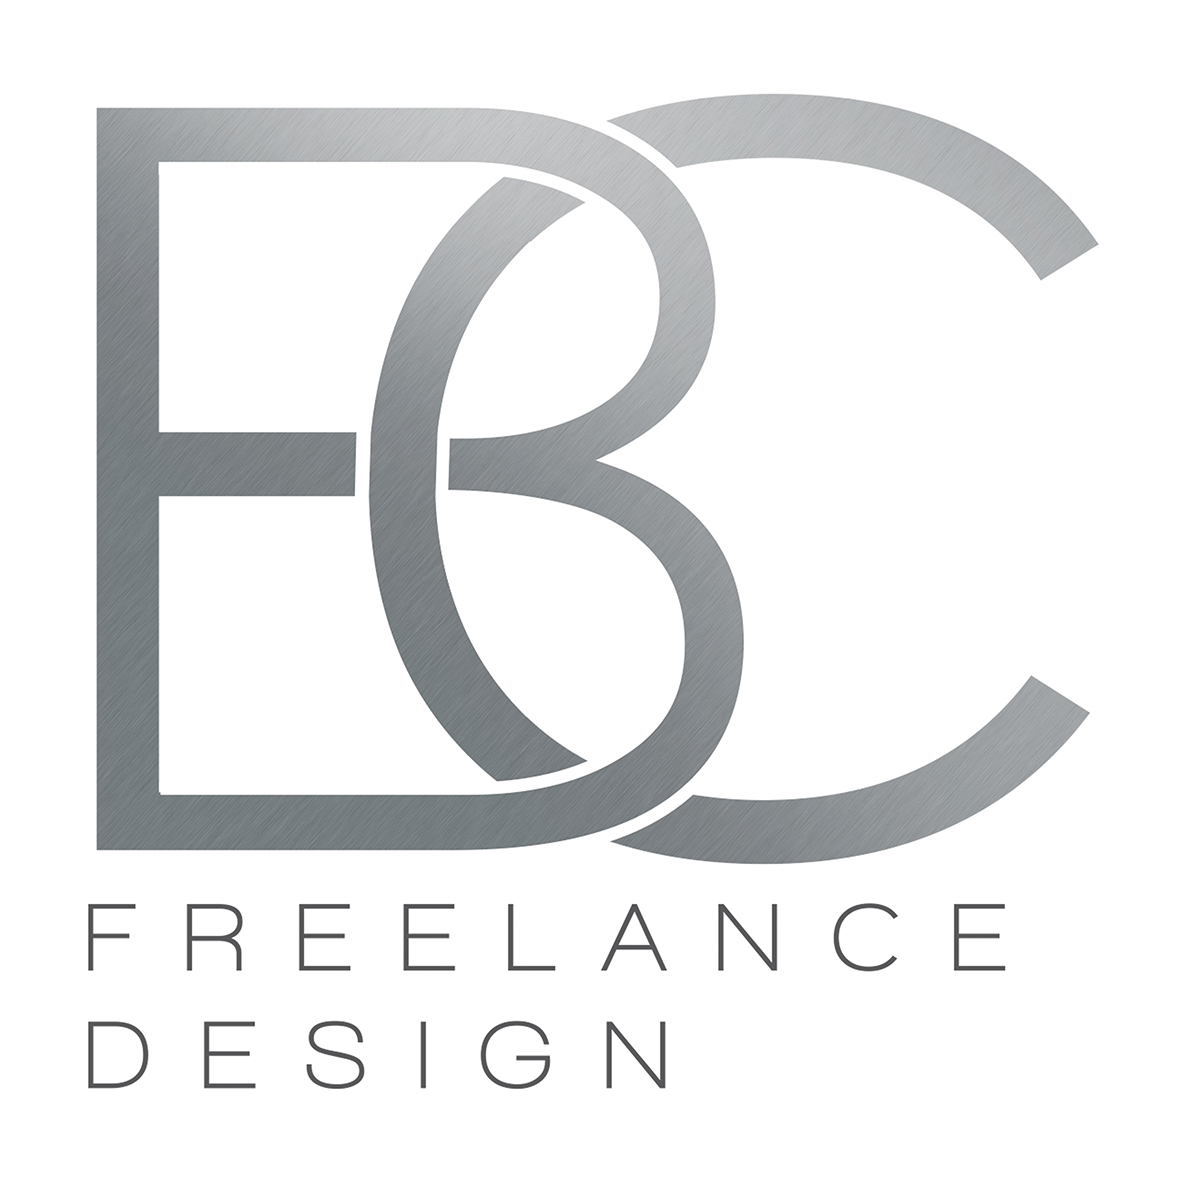 BC freelance design - Accommodation Sunshine Coast